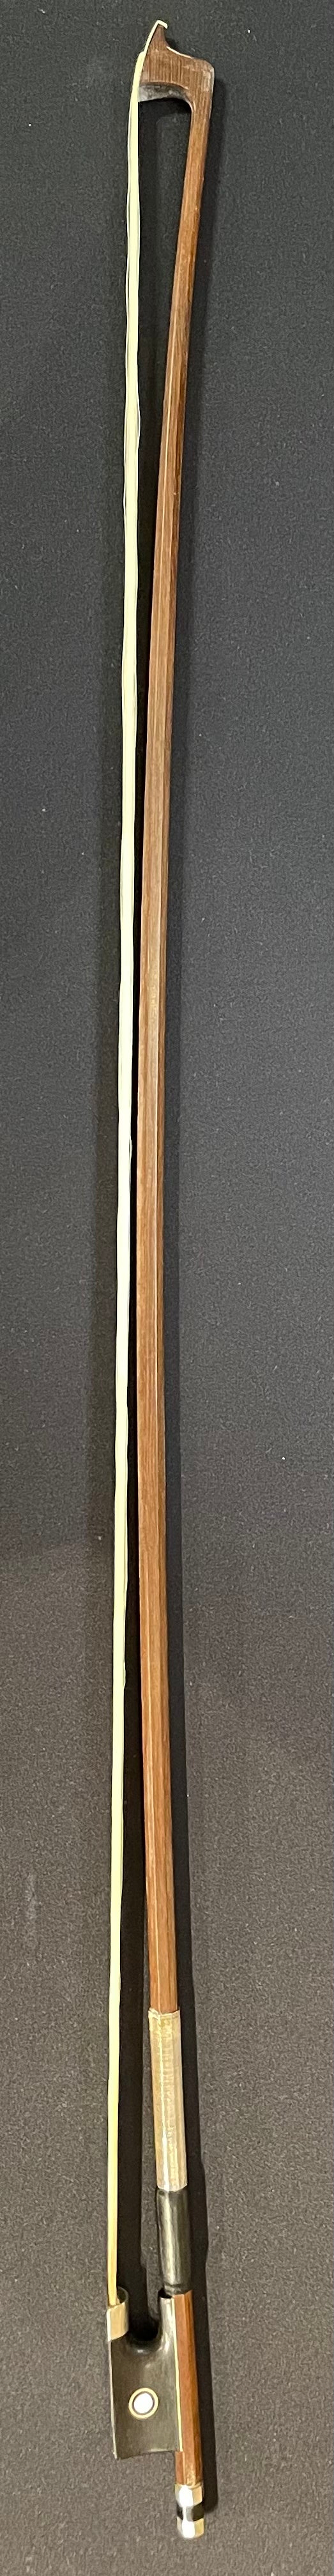 4/4 Violin Bow - LS4Q Wood Model